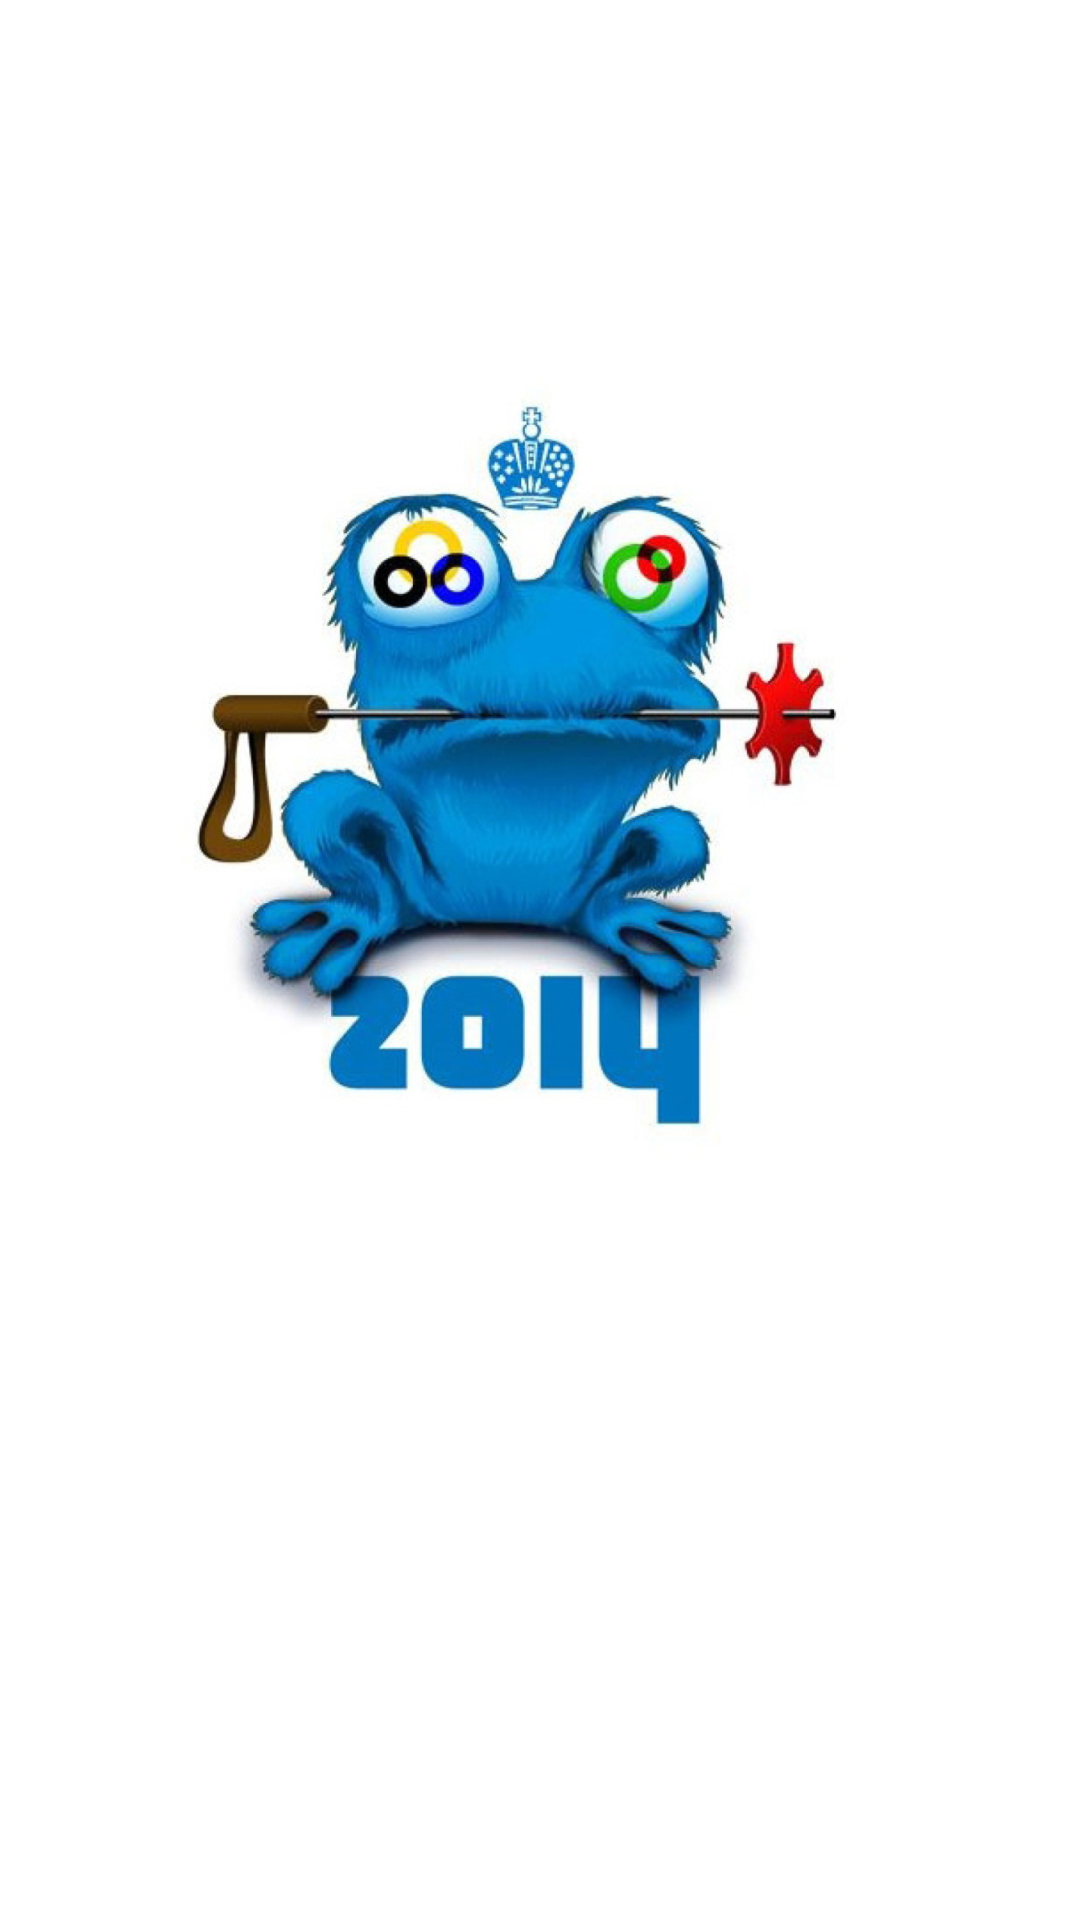 Sochi 2014 Olympic Mascot wallpaper 1080x1920